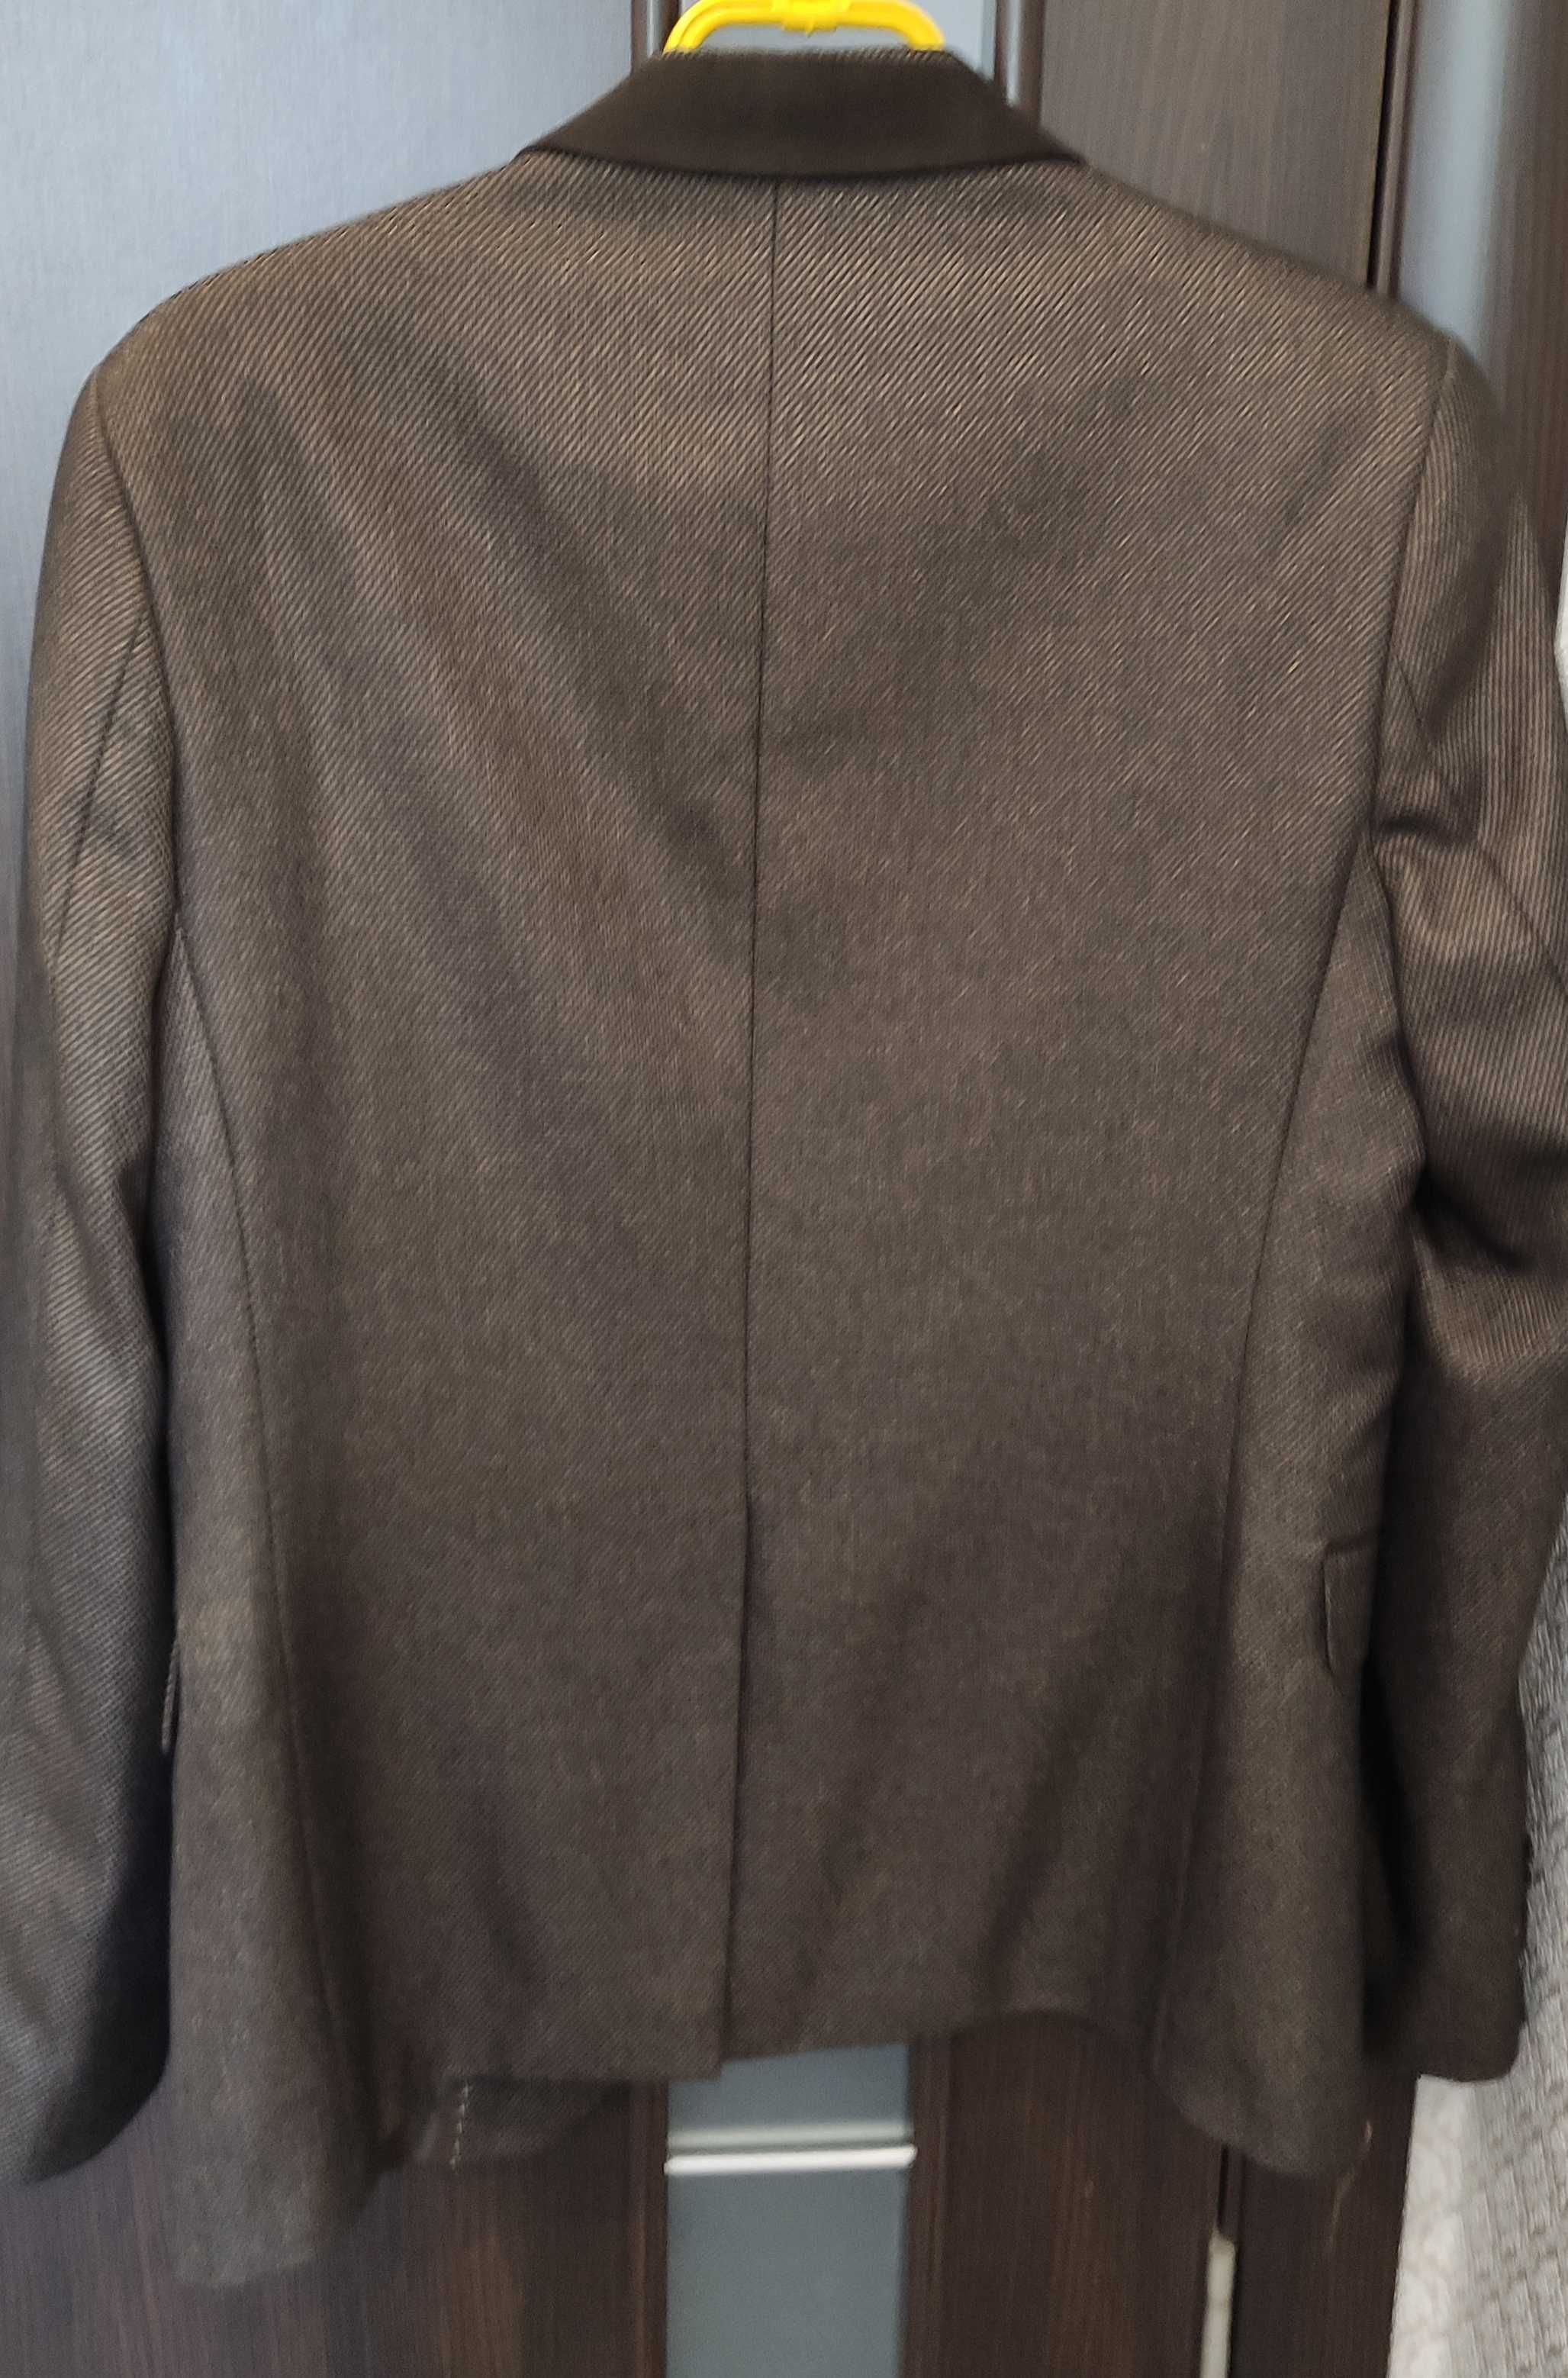 Пиджак коричневый Мужской продам Срочно в Павлограде Торг